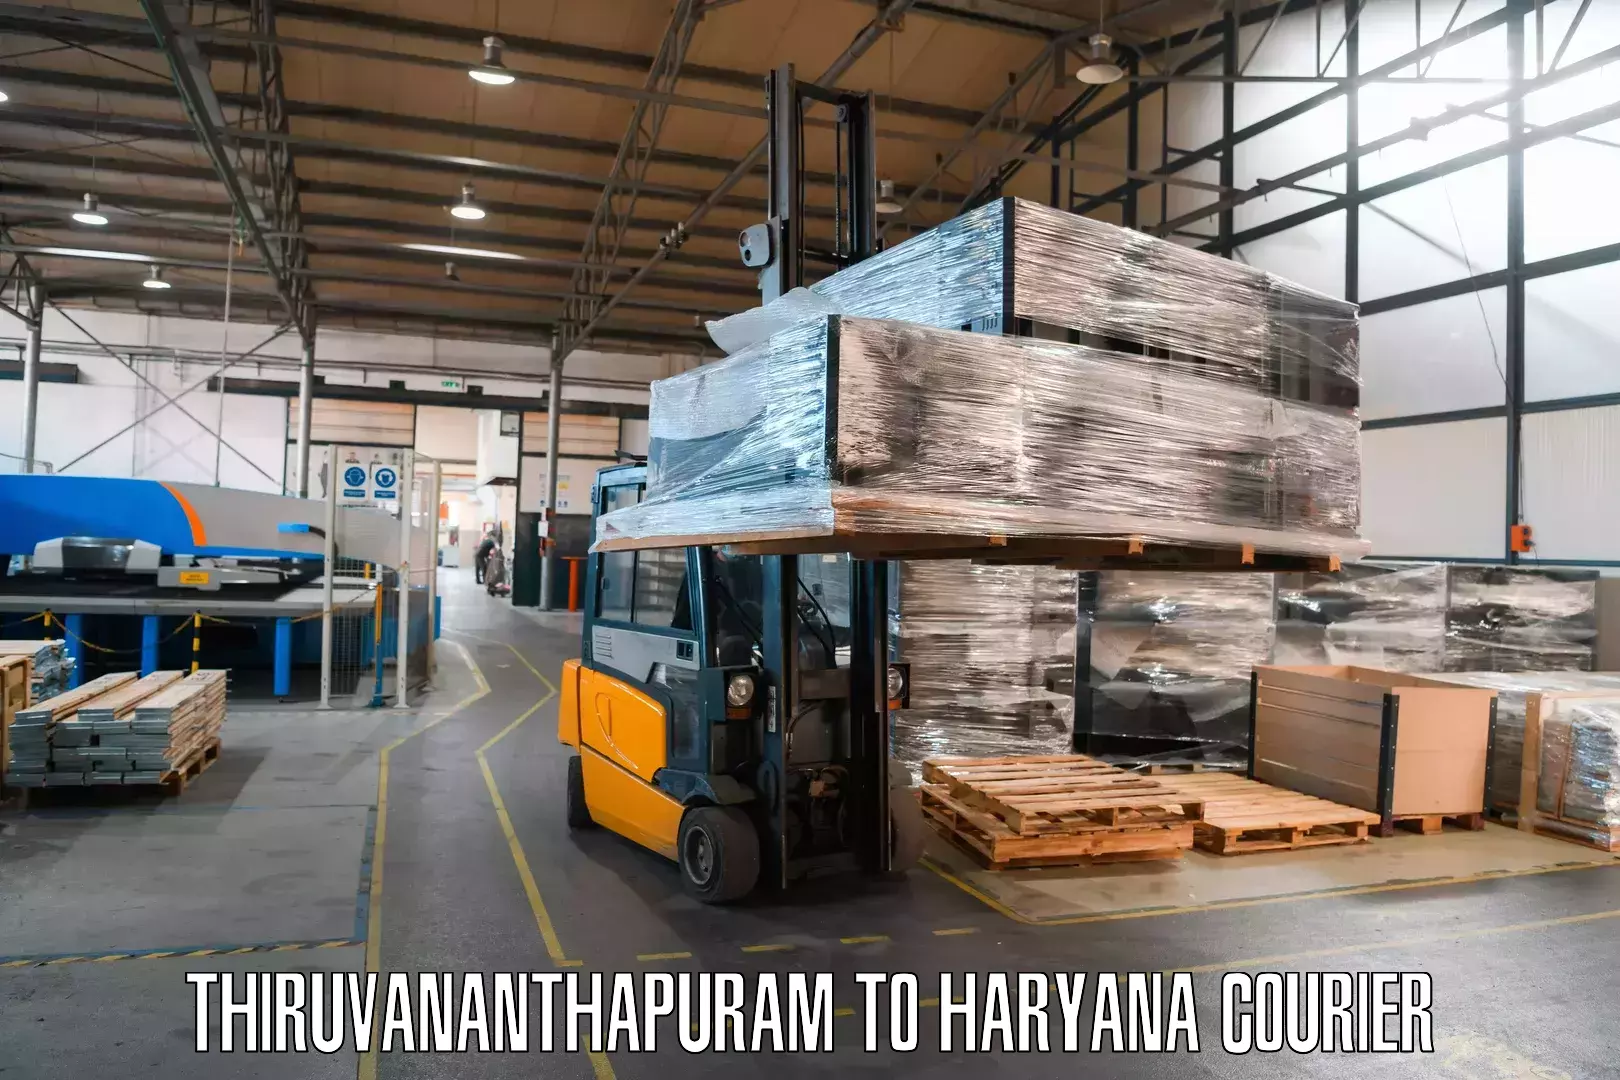 Efficient freight service Thiruvananthapuram to Haryana